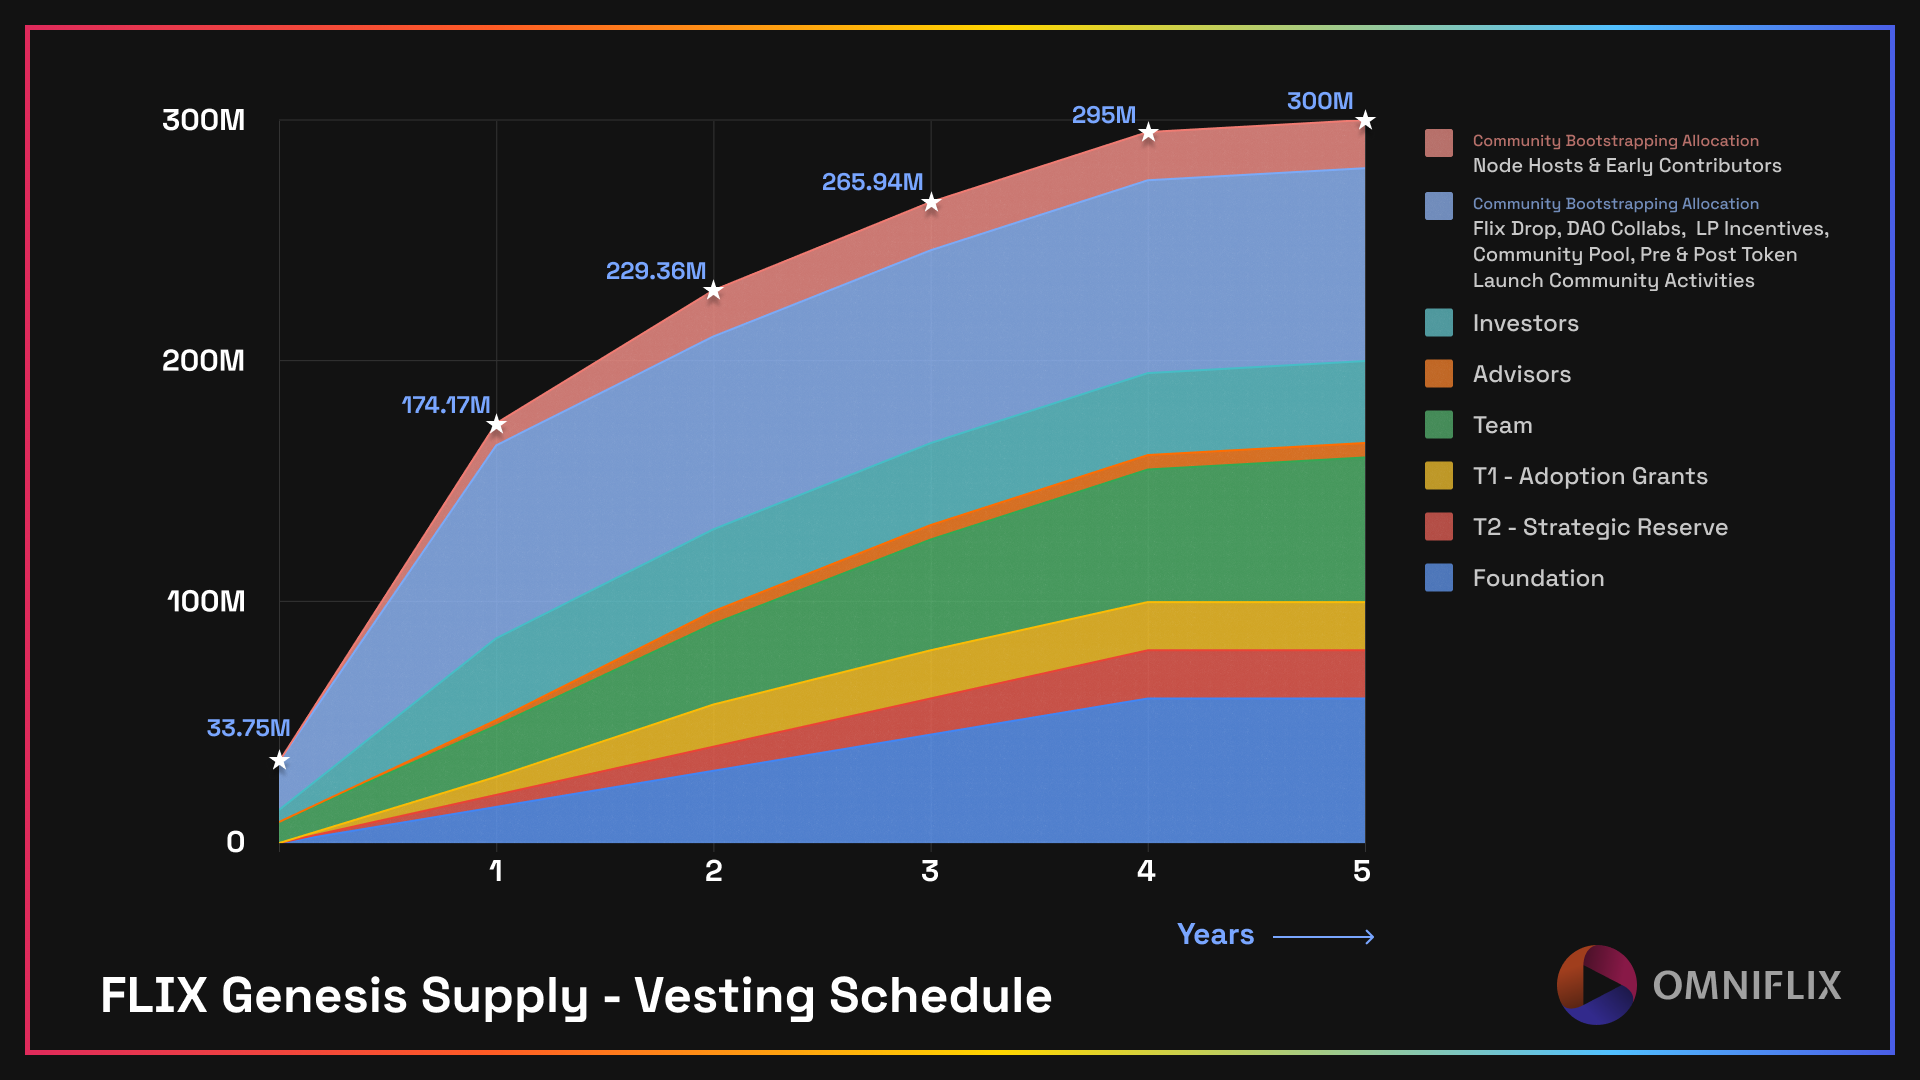 Vesting schedule of the genesis supply of 300M FLIX